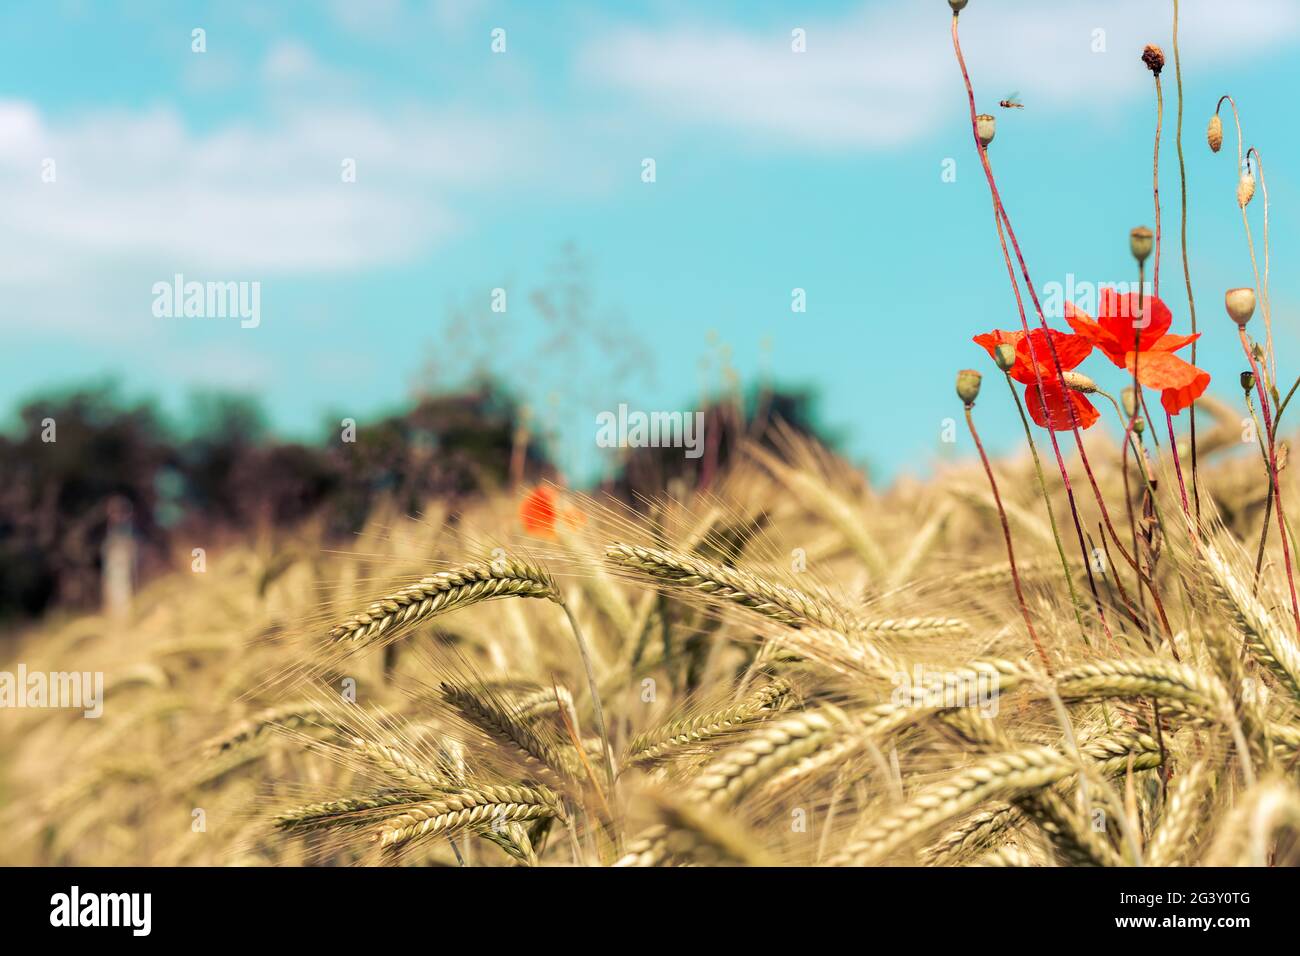 Campo agrícola: Mazorcas maduras de trigo y semillas de adormidera roja, cosecha Foto de stock